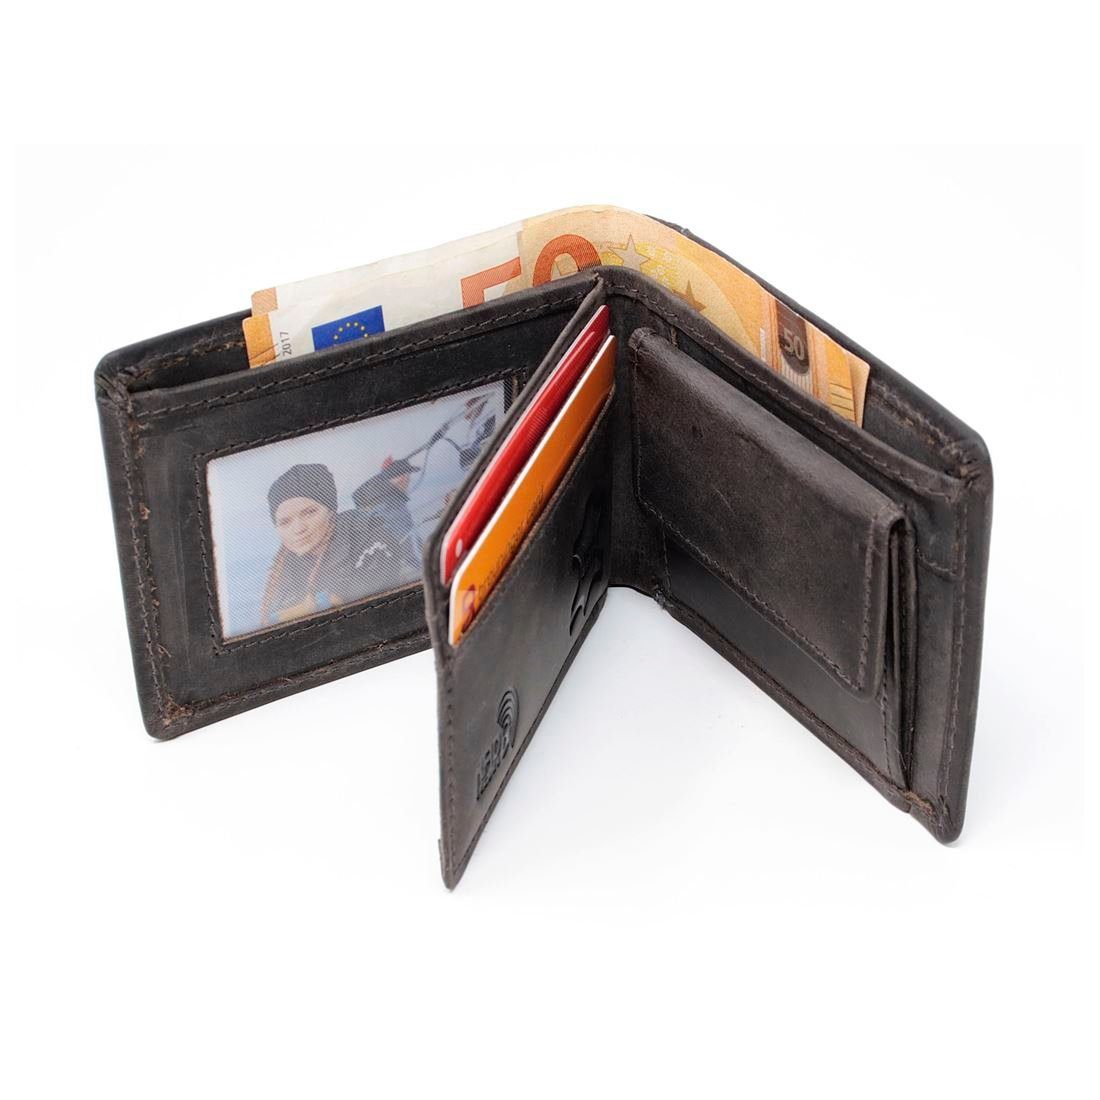 Leder Portemonnaie, Lederbörse RFID Männerbörse SHG Geldbörse Münzfach Herren Brieftasche Börse mit Schutz